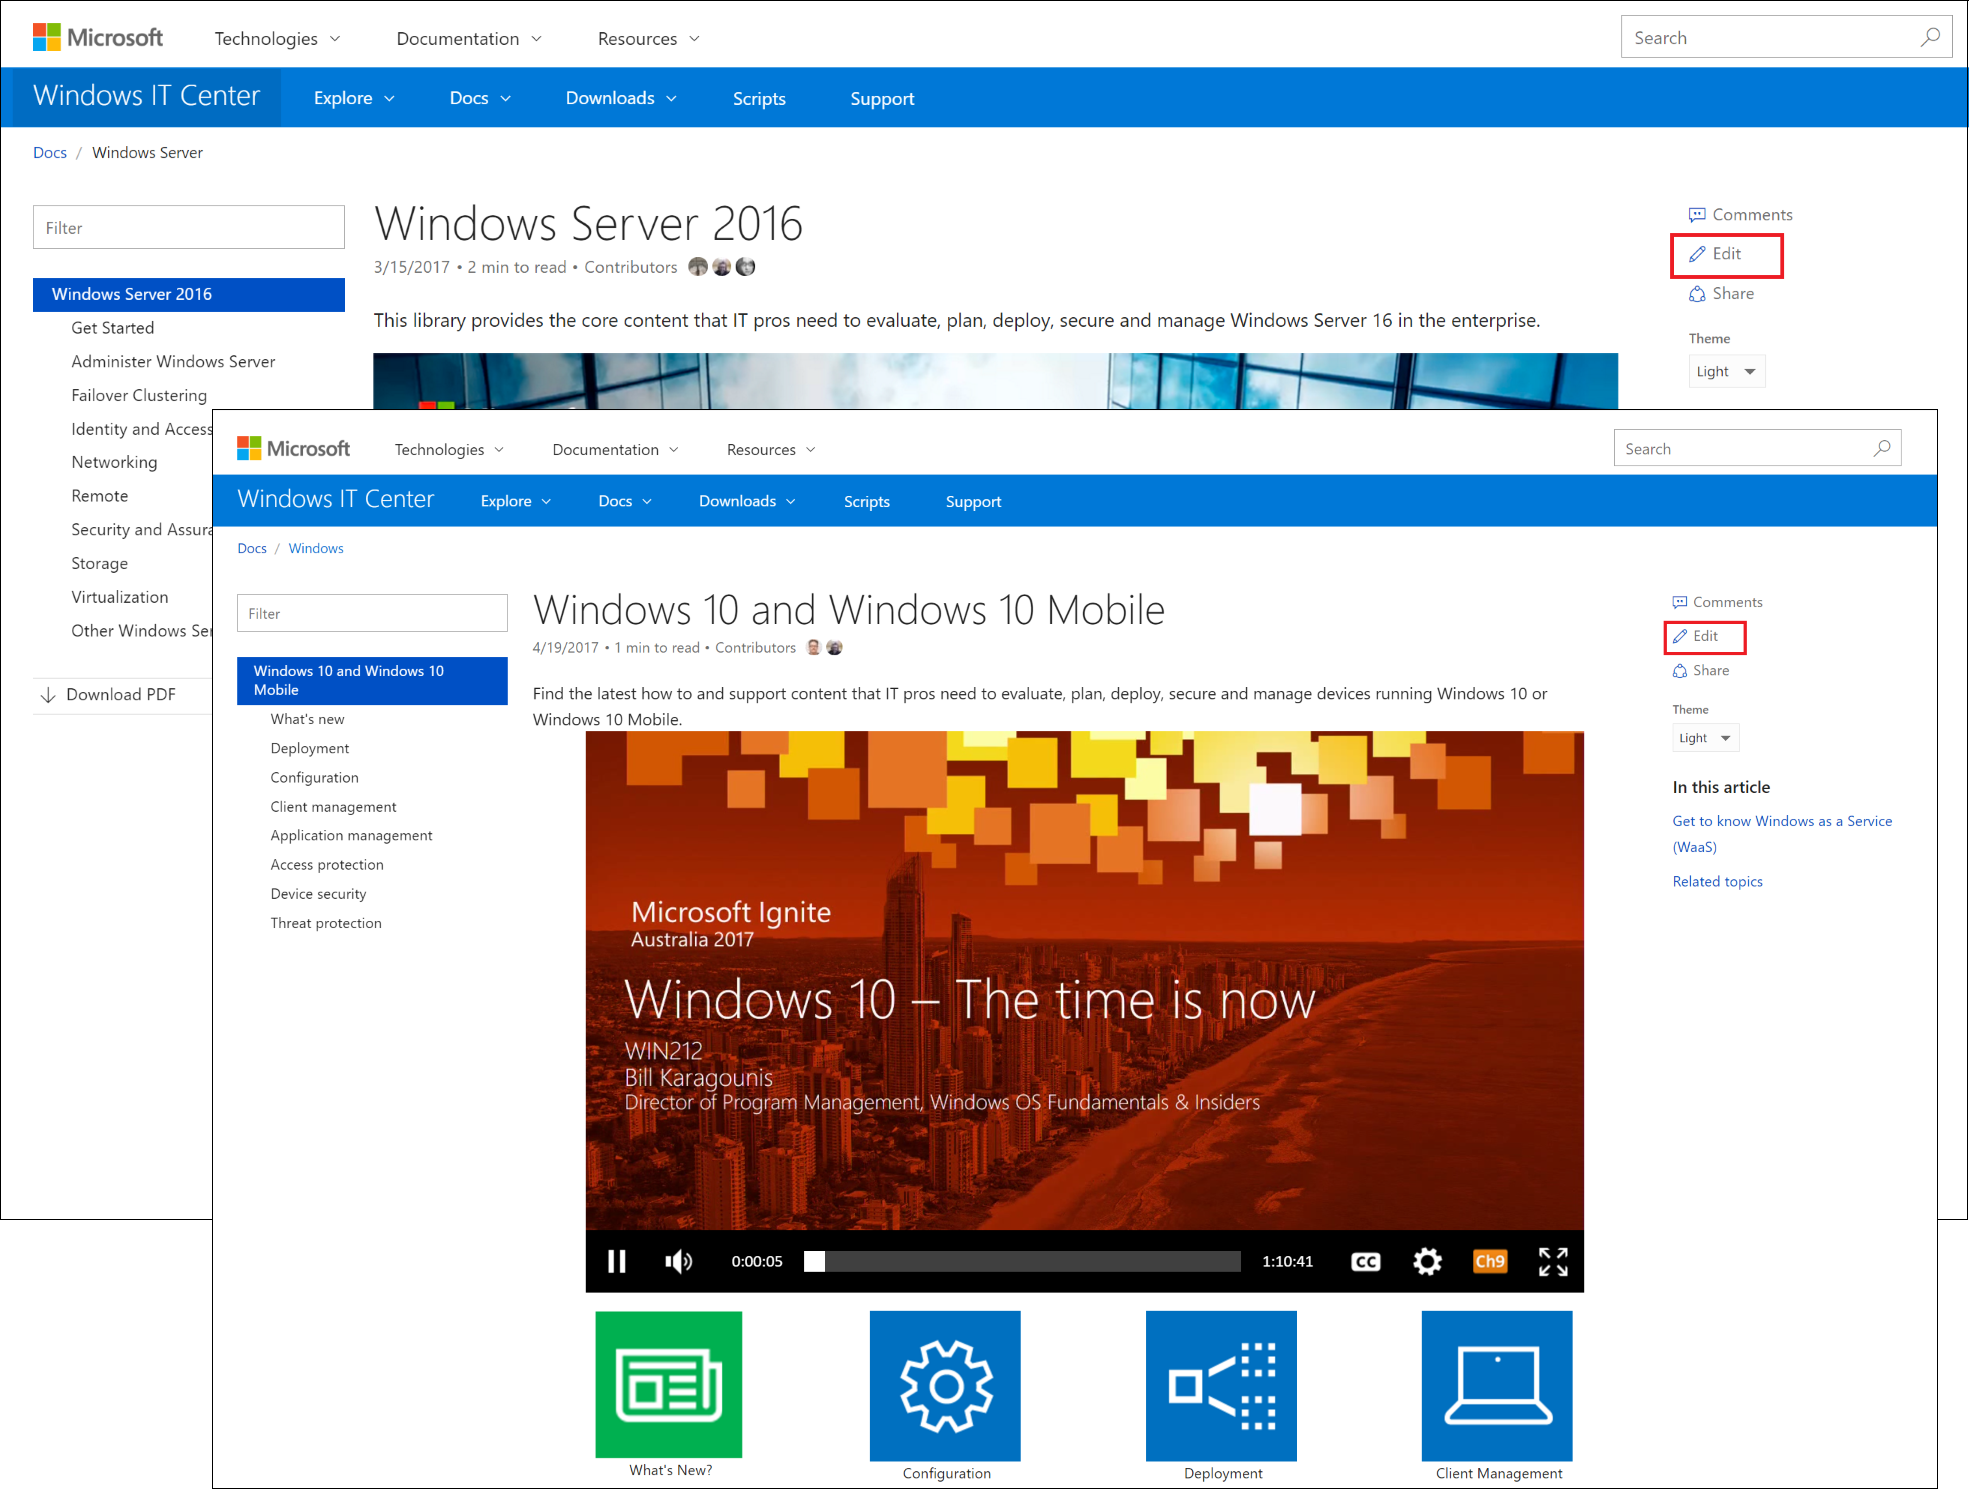 Windows 10 e Windows 10 Mobile e Windows Server 2016 pagine di destinazione in docs.microsoft.com